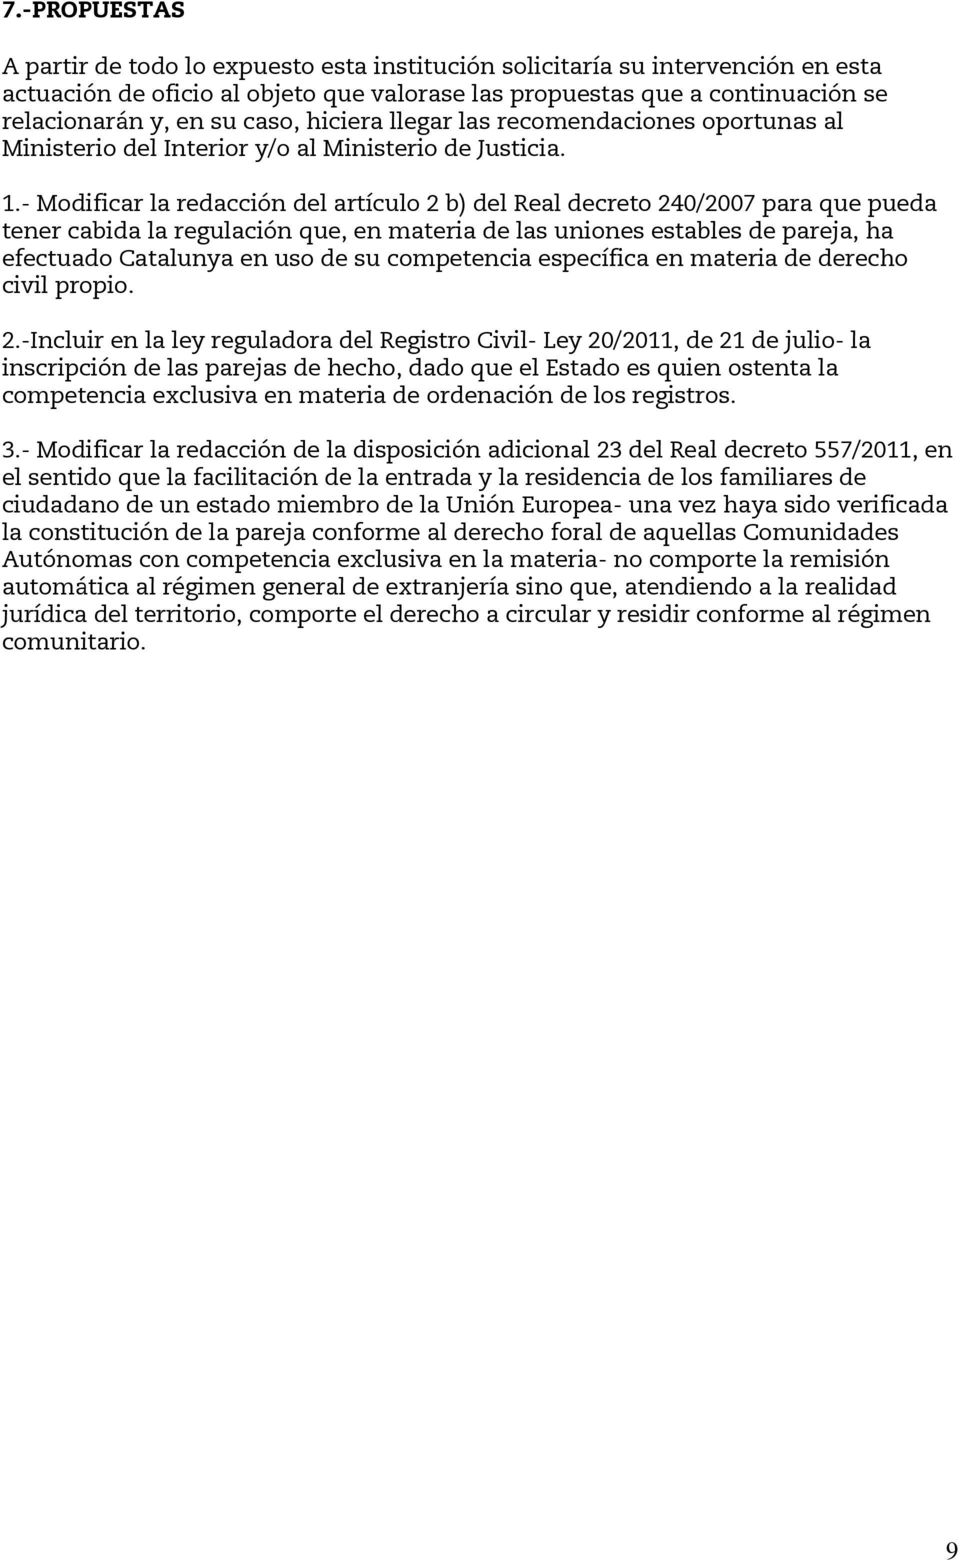 - Modificar la redacción del artículo 2 b) del Real decreto 240/2007 para que pueda tener cabida la regulación que, en materia de las uniones estables de pareja, ha efectuado Catalunya en uso de su